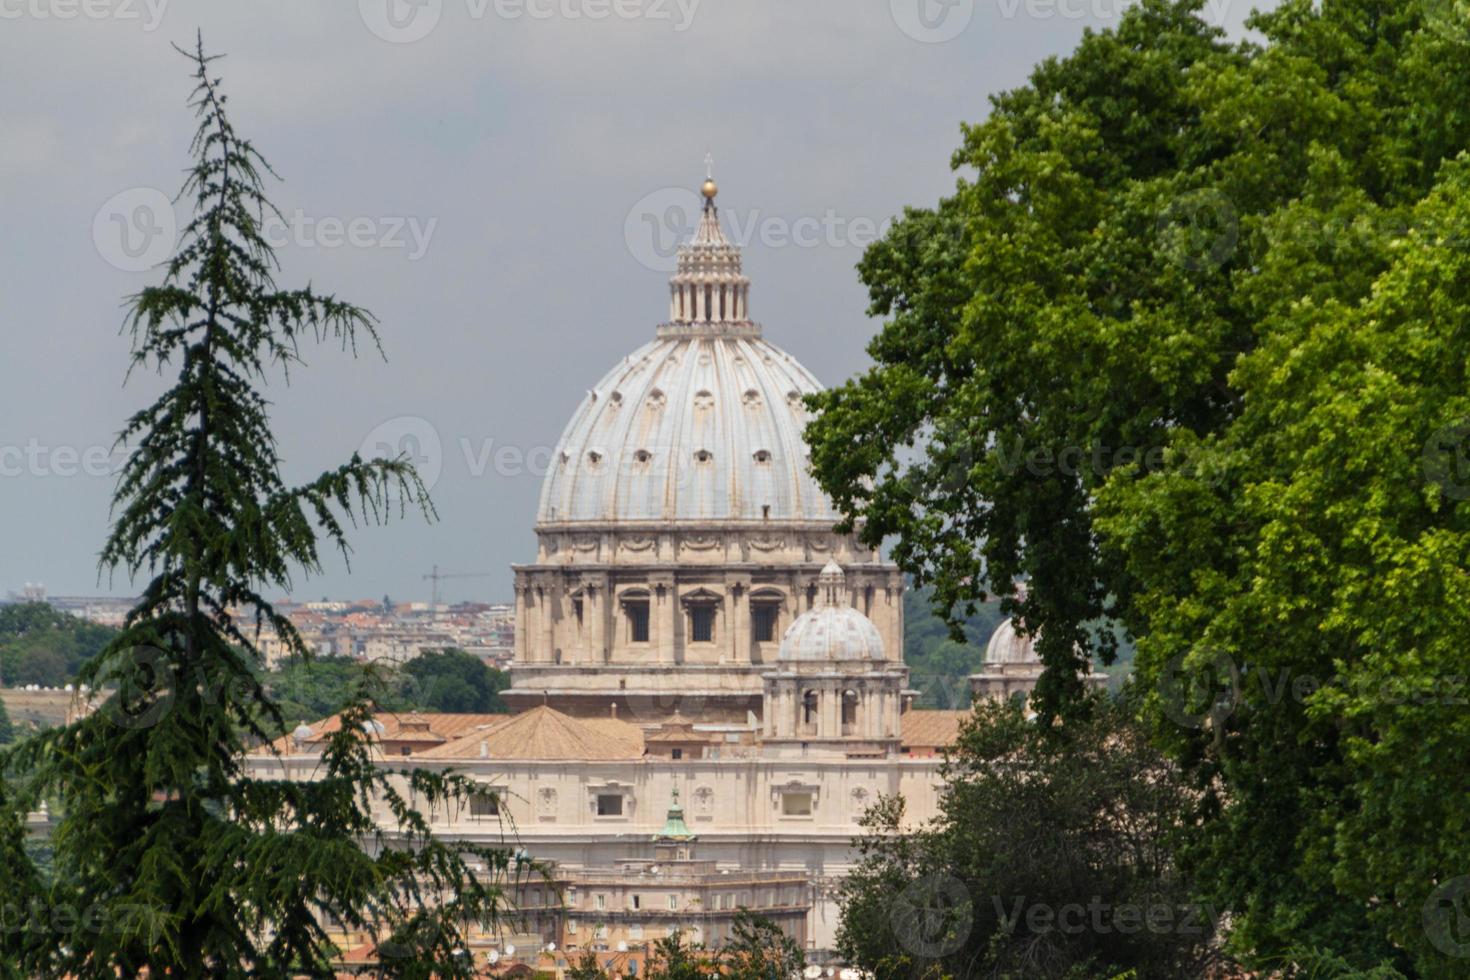 Basilica di San Pietro, Vatican City, Rome, Italy photo